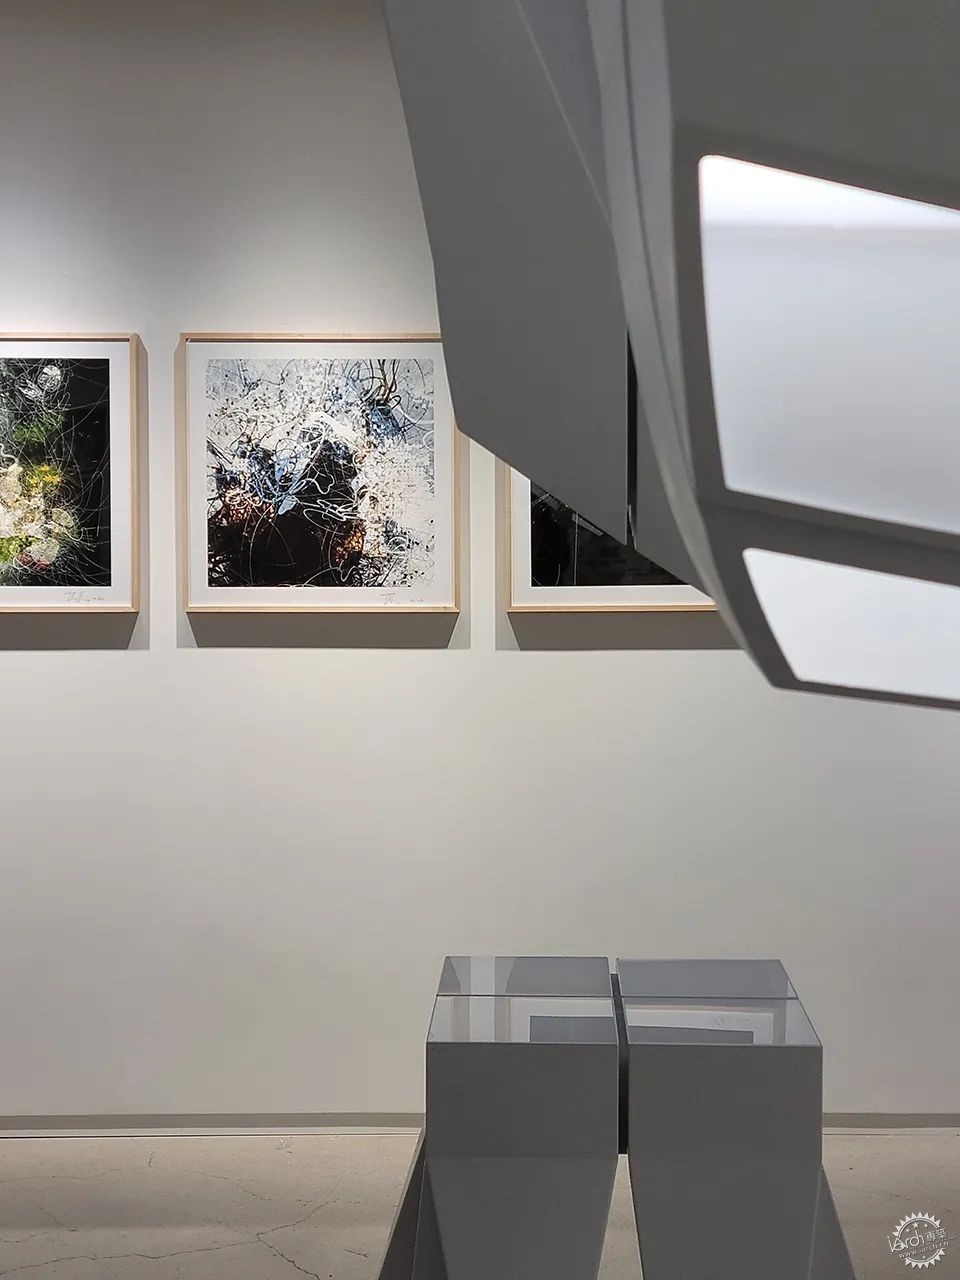 墨菲西斯空间新作：韩国首尔圣水洞55画廊 暨设计展“胶囊一号”开幕第22张图片